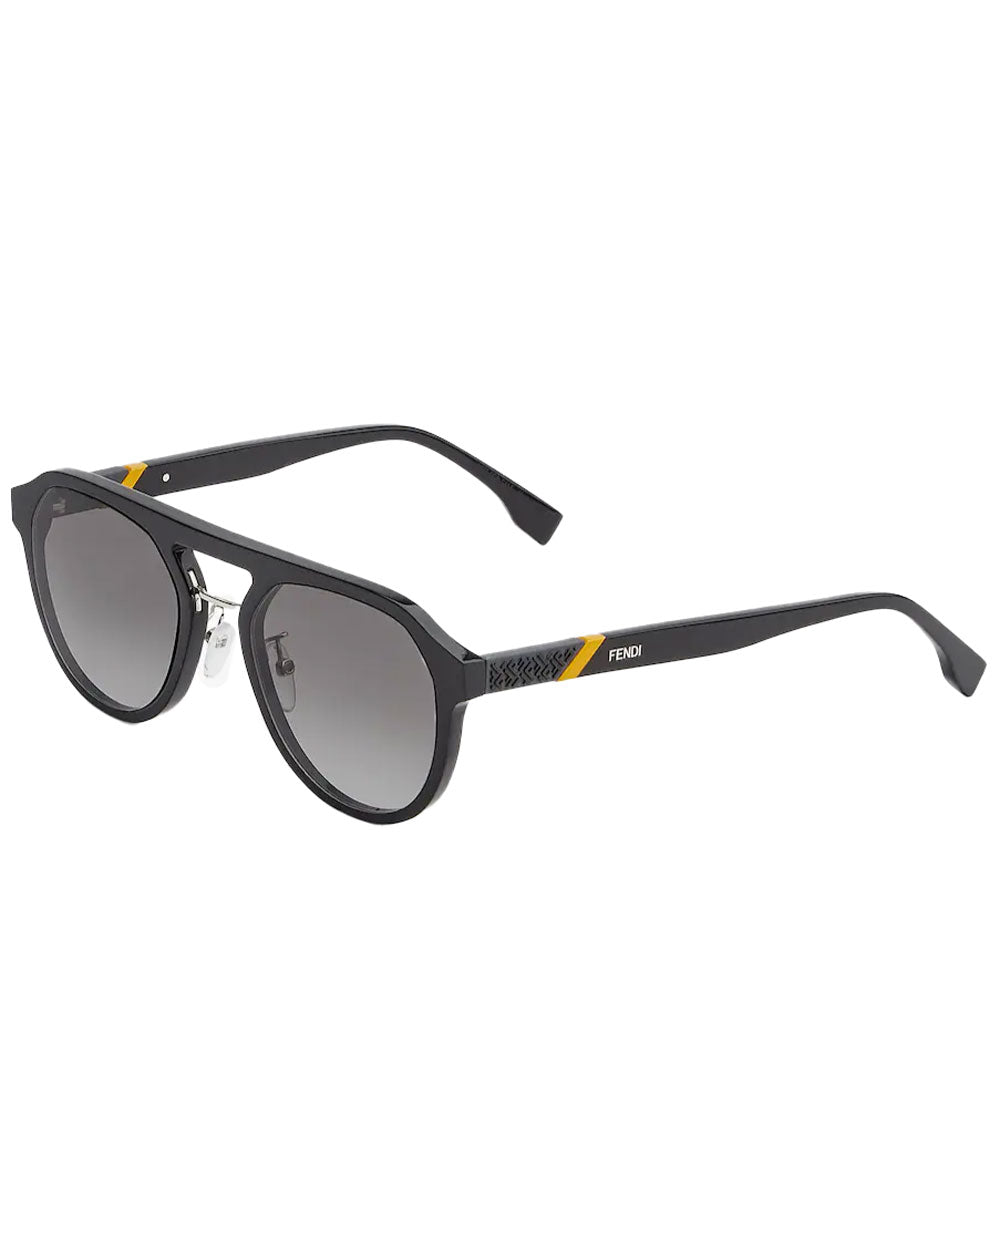 Diagonal Sunglasses in Black